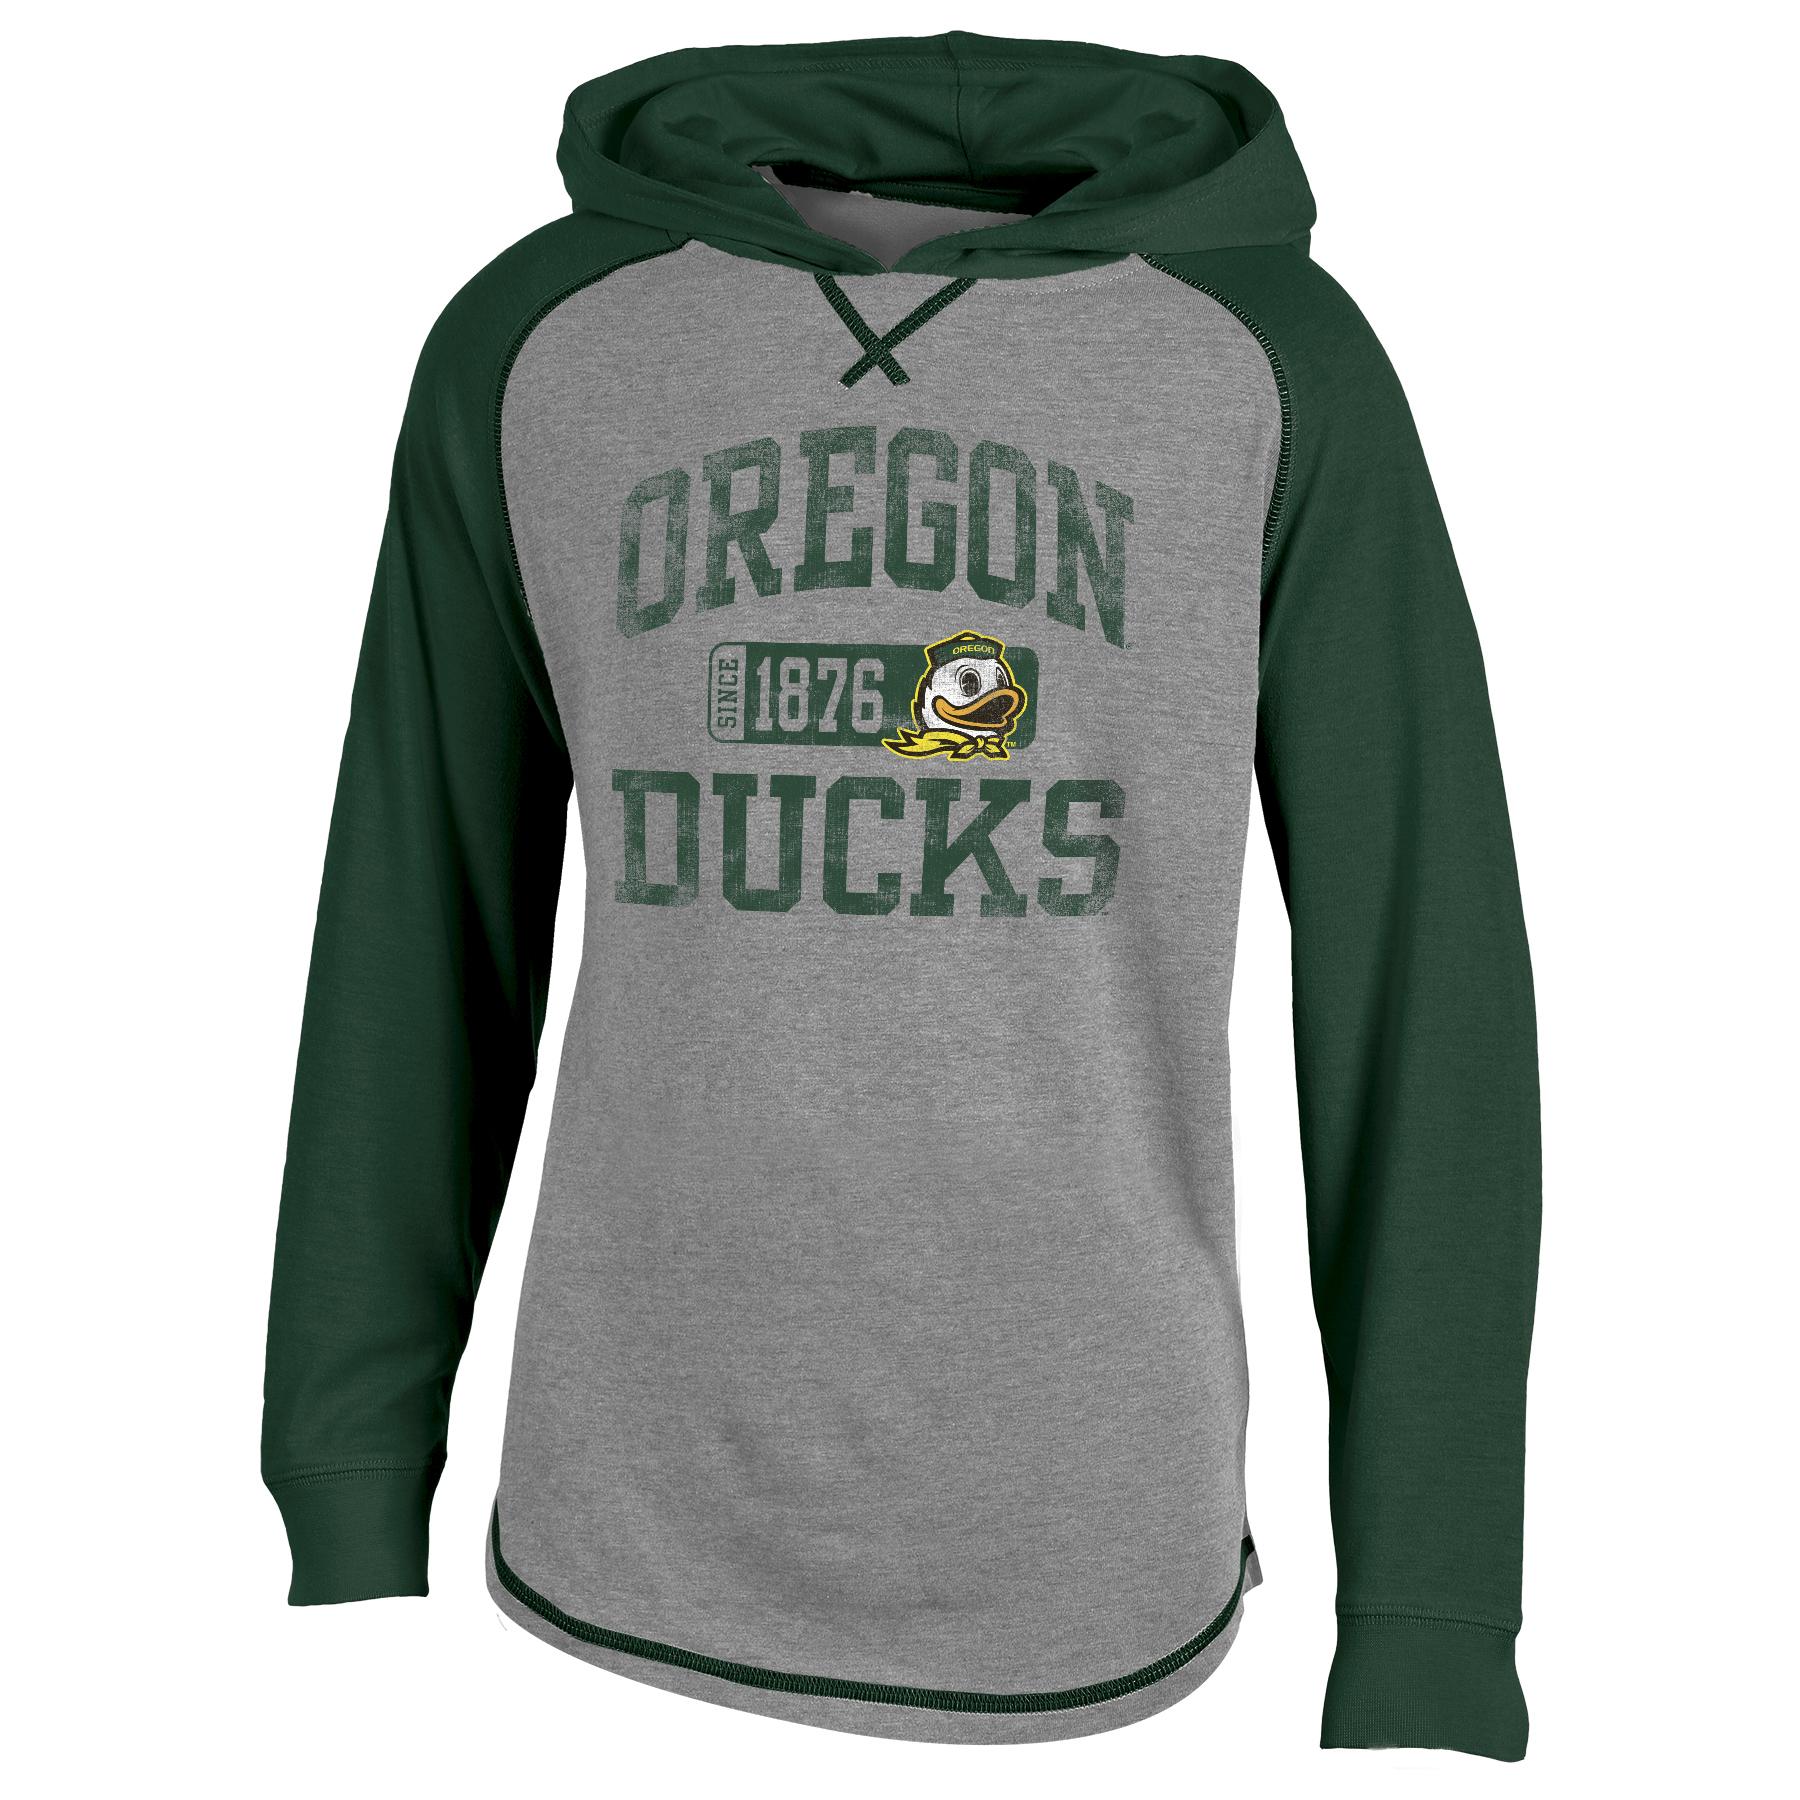 NCAA Boys' Hoodie - University of Oregon Ducks